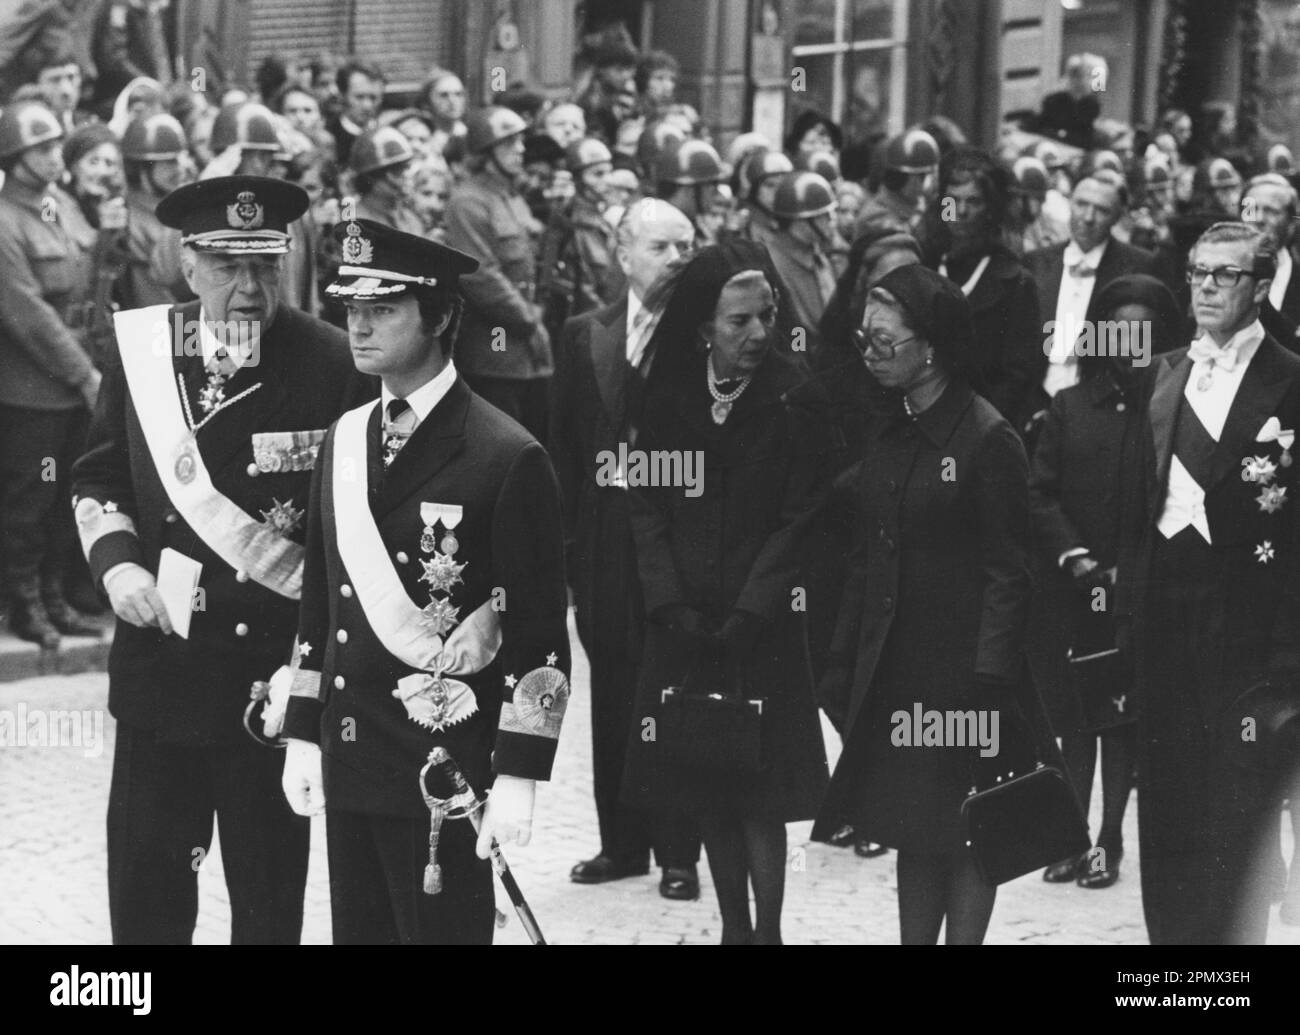 Carl XVI Gustaf, roi de Suède. Né le 30 avril 1946. Photo le 25 septembre 1973 aux funérailles de son grand-père, le roi Gustaf VI Adolf. Assister aux funérailles également Reine Ingrid du Danemark, princesse Christina de Suède, prince Bertil. Banque D'Images